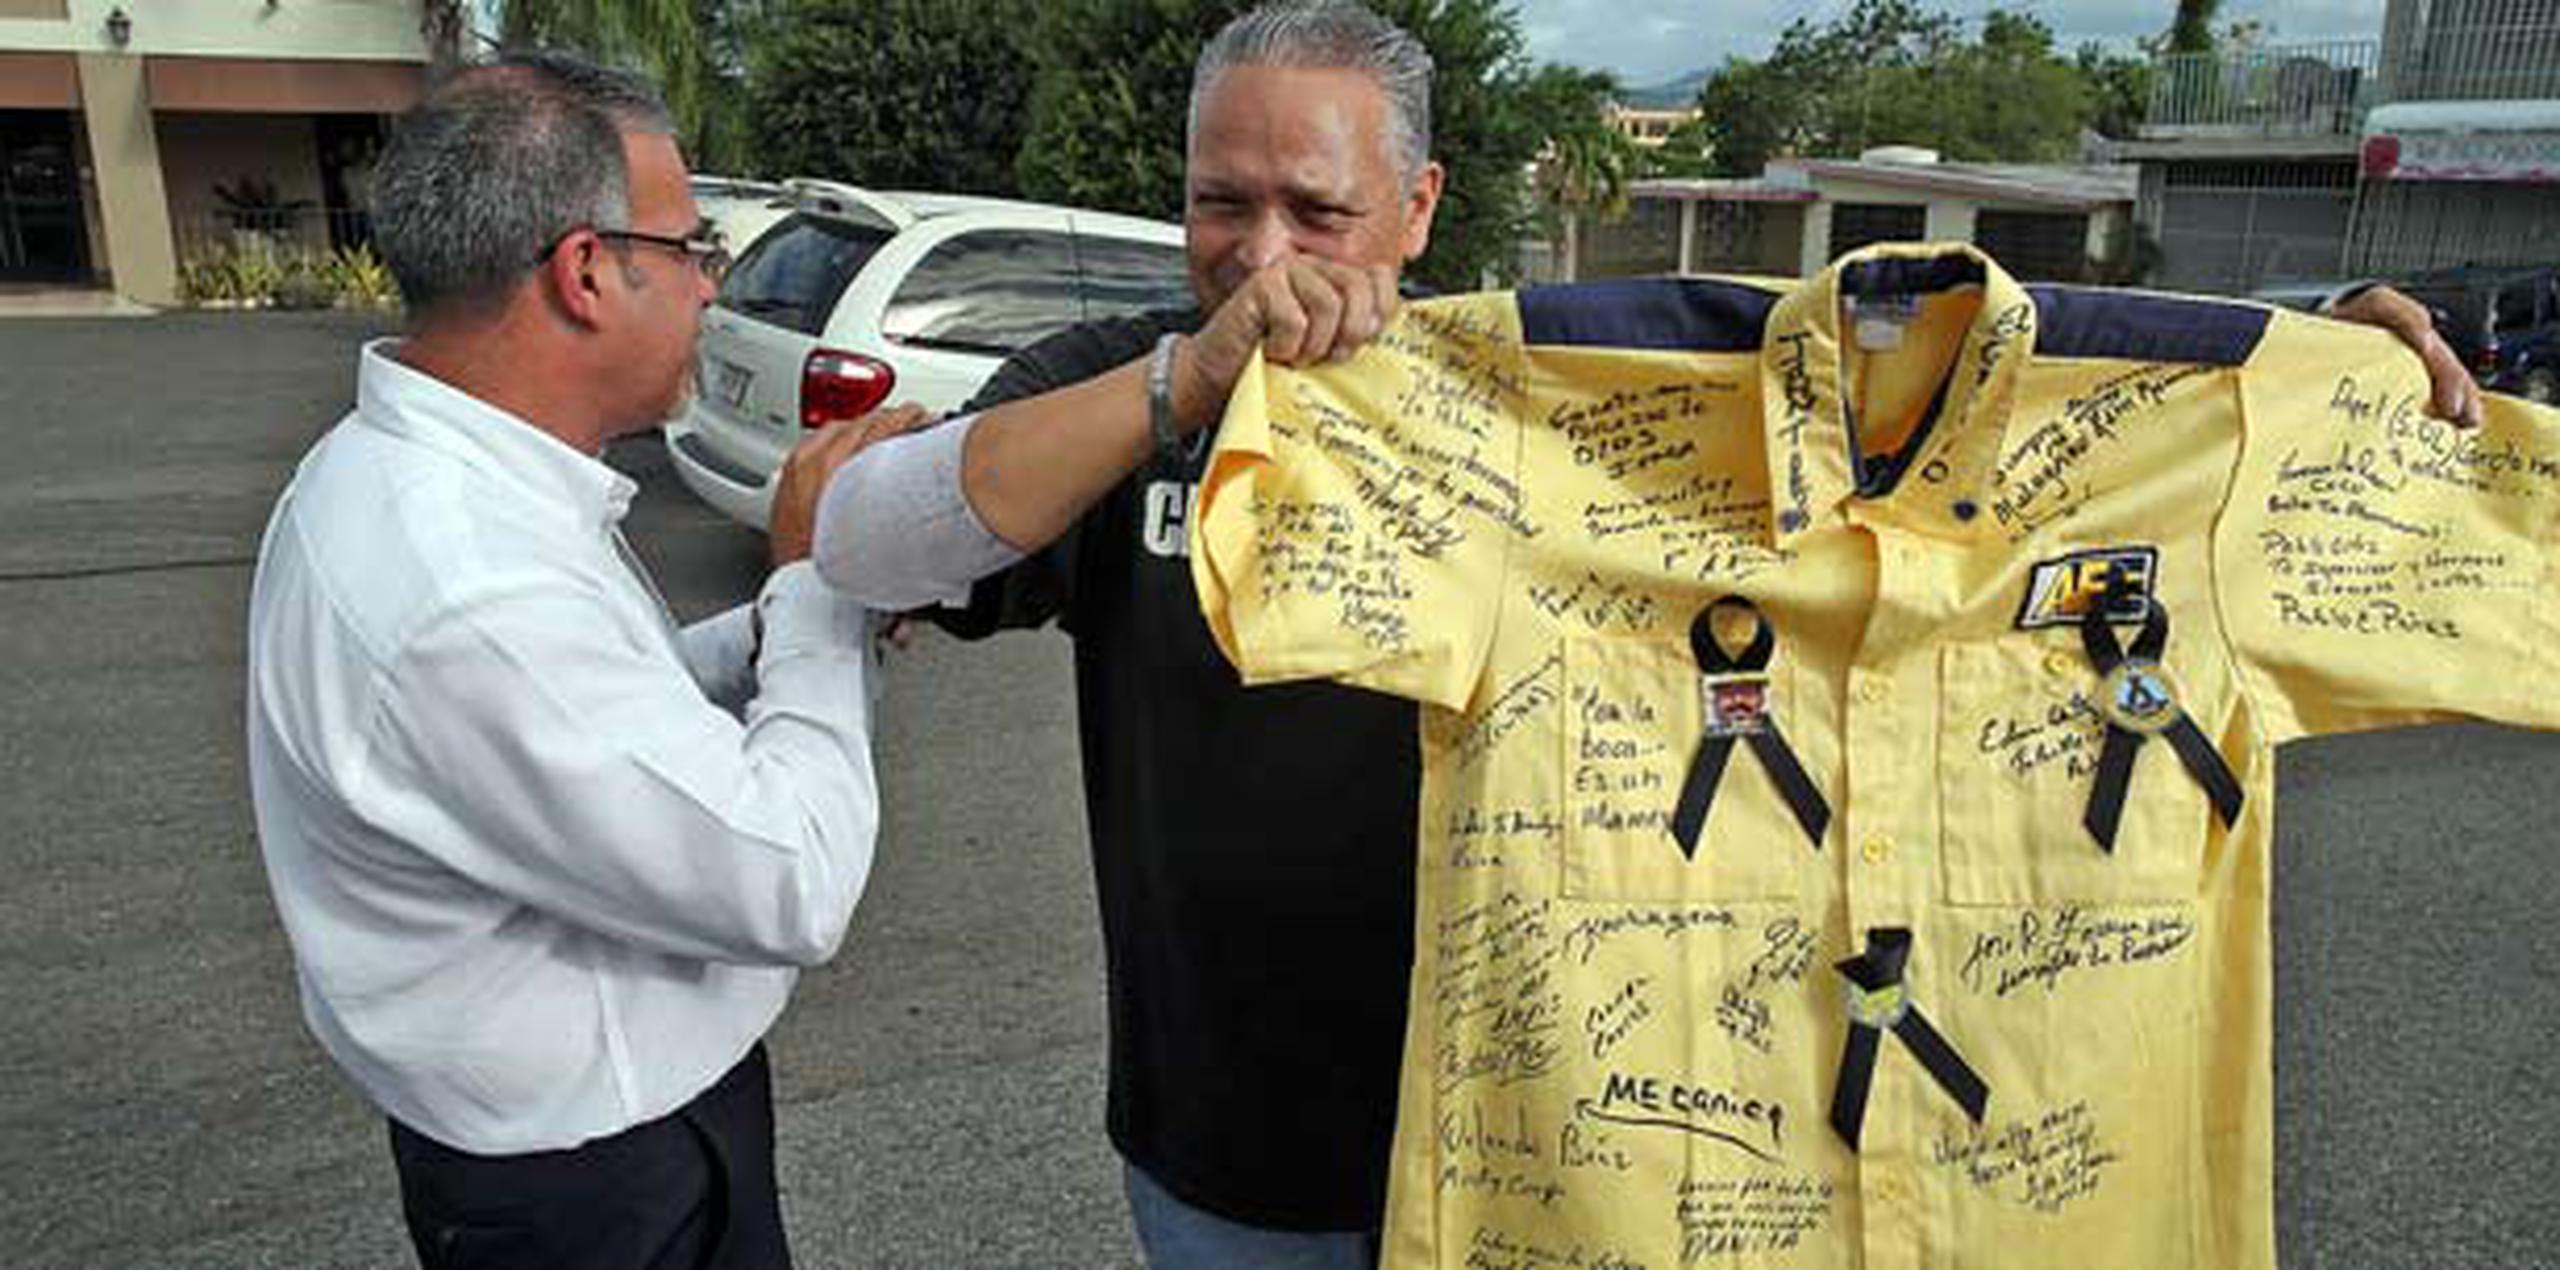 Los compañeros de trabajo de Beto firmaron una camisa con mensajes de condolencia. (david.villafane@gfrmedia.com)